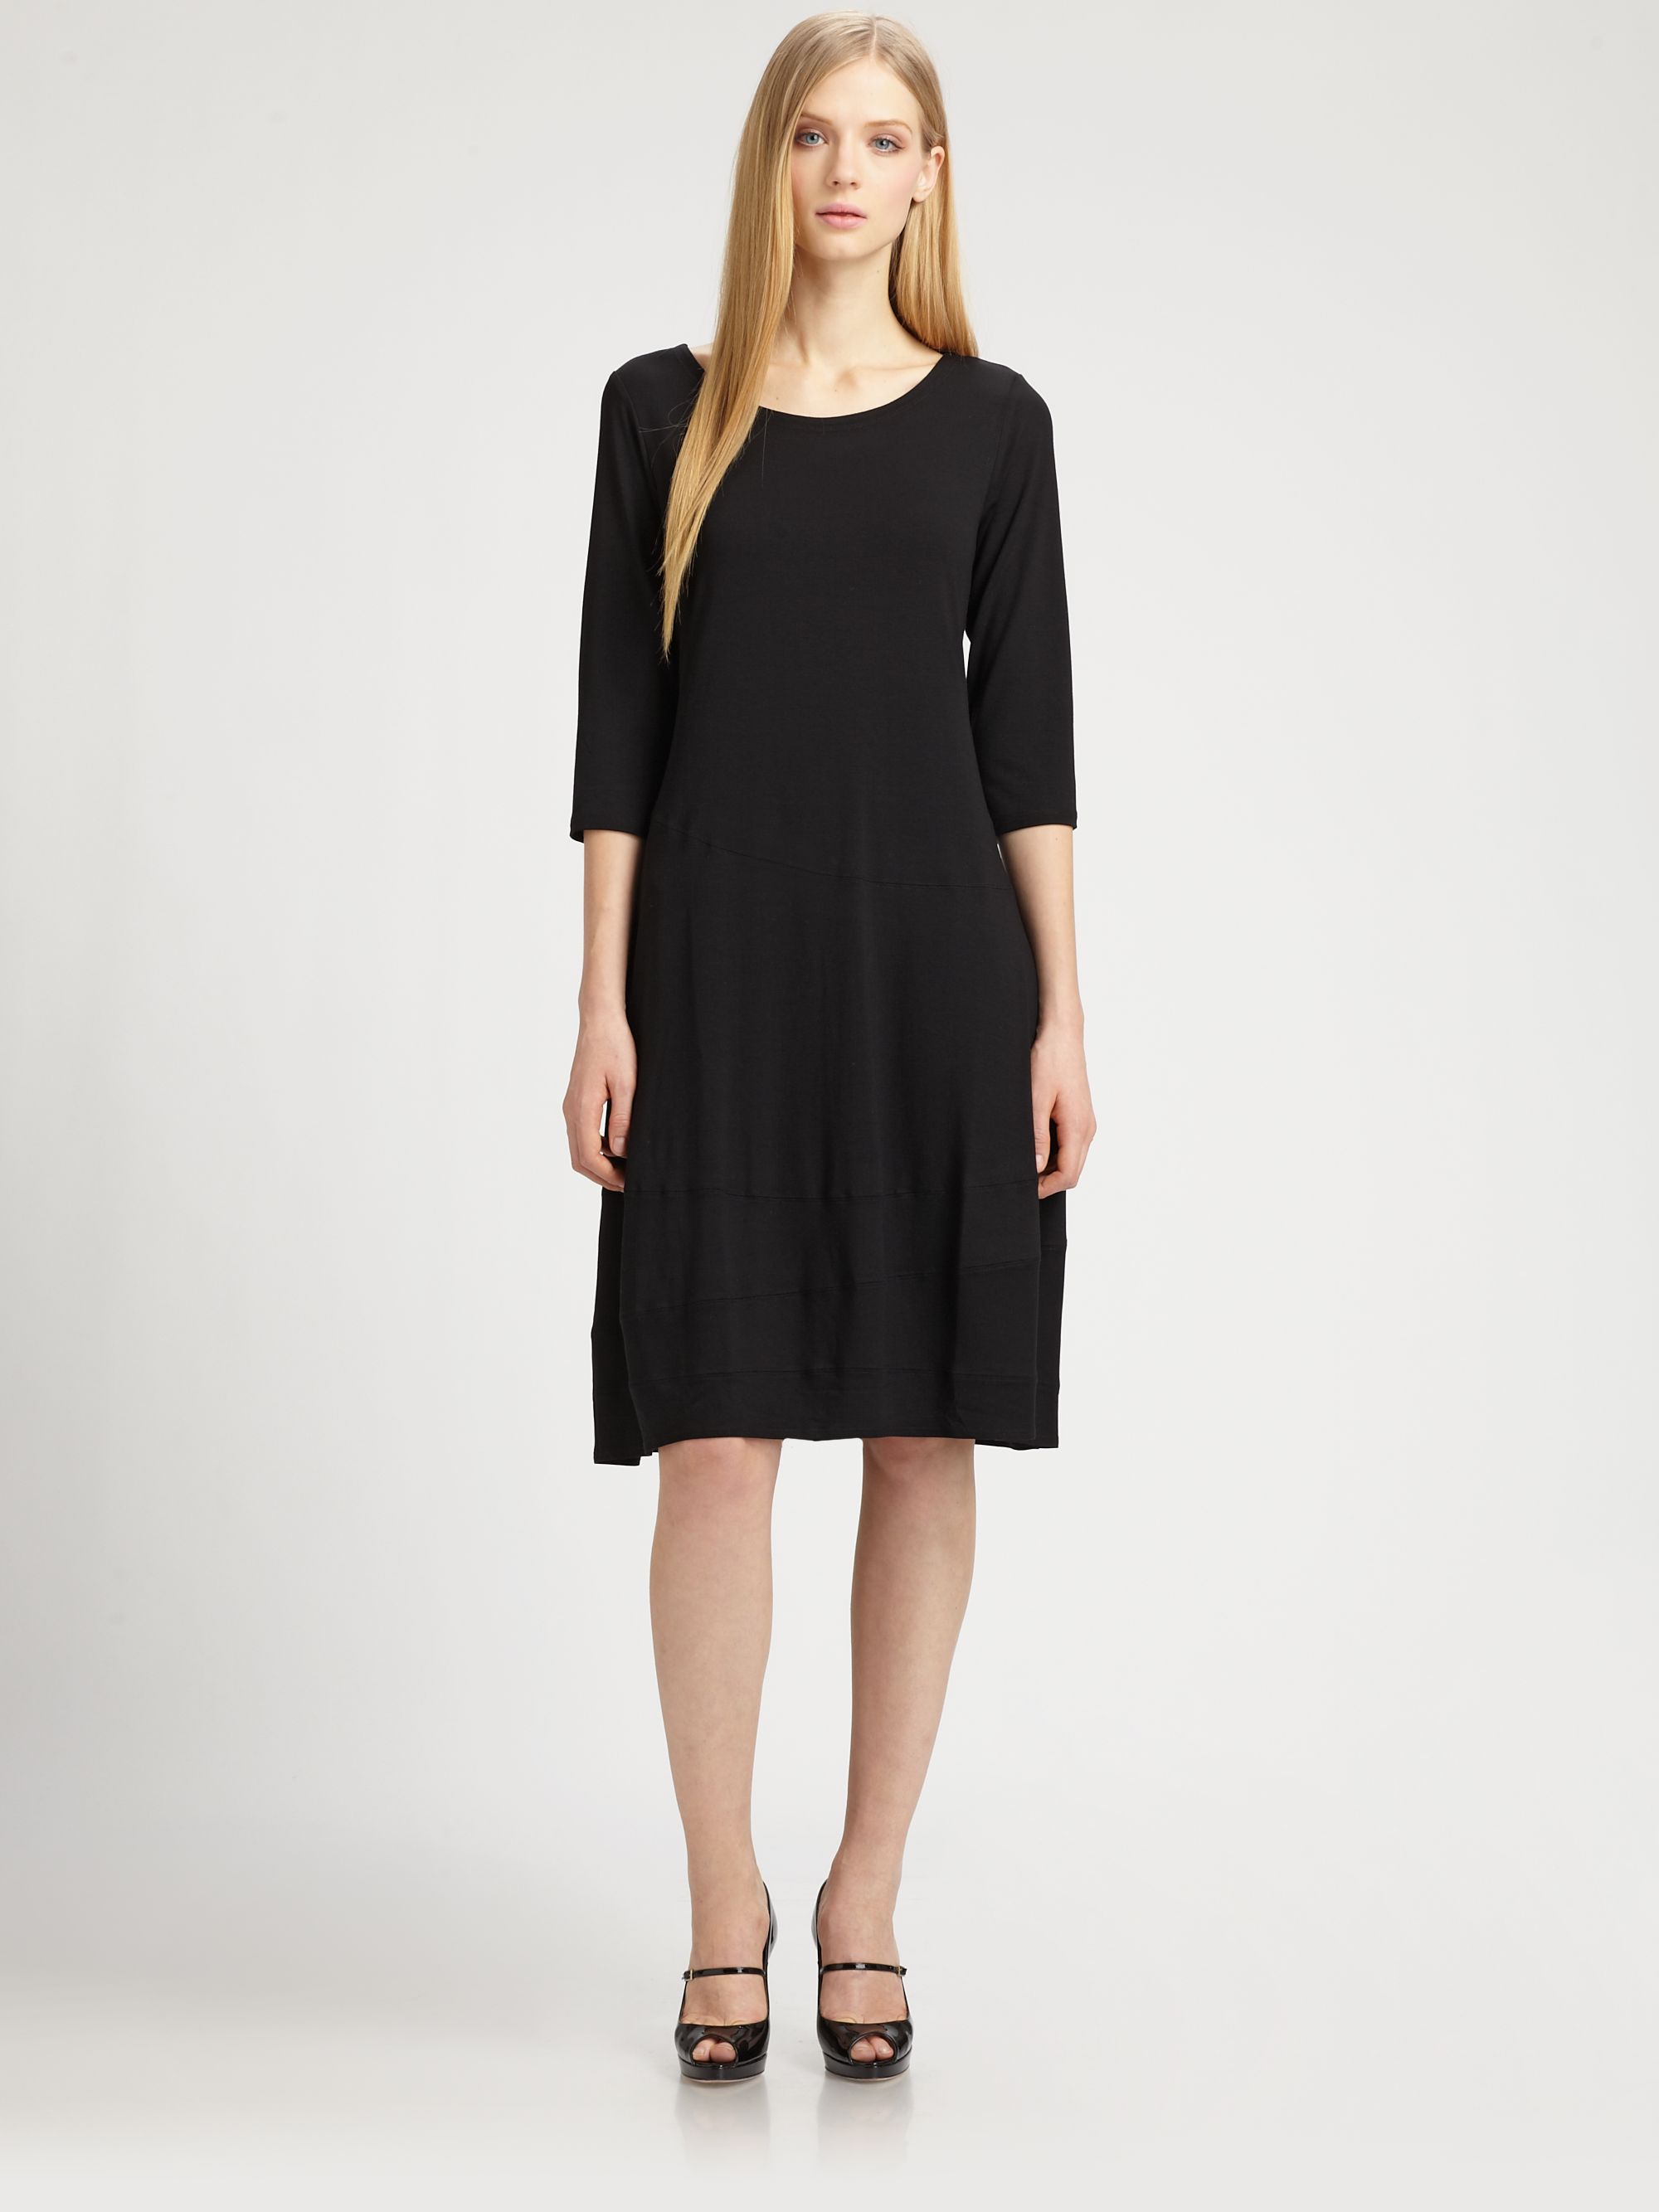 Eileen fisher Jersey Dress in Black | Lyst